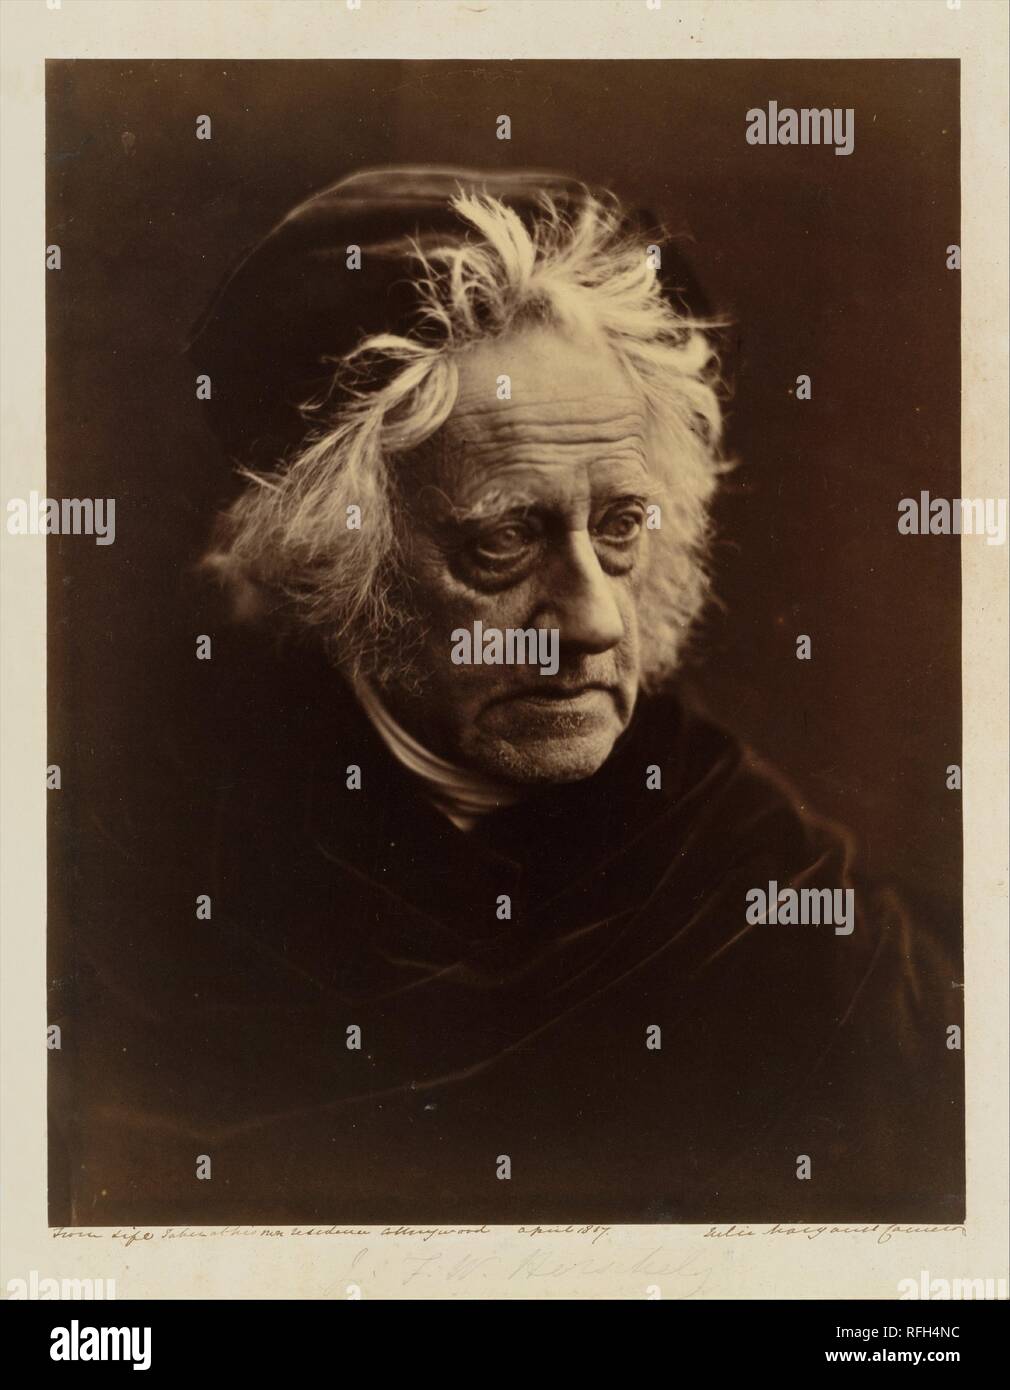 Sir John Herschel. Artista: Julia Margaret Cameron (britannico nato (India), Calcutta 1815-1879 Kalutara, Ceylon). Dimensioni: Immagine: 31,8 x 24,9 cm (12 1/2 x 9 13/16 in.). Montaggio: 39,9 x 32,9 cm (15 11/16 x 12 15/16 in.), angoli tagliati. Data: aprile 1867. Sir John Herschel (1792-1871) era l'Inghilterra vittoriana di scienziato preminente, astronomo e matematico, considerata la parità di Sir Isaac Newton. Cameron ha incontrato lui nel 1836 a Città del Capo, Sud Africa, dove era ricoverato da malattia e che egli è stato per la creazione di grafici delle stelle dell'emisfero meridionale e la registrazione della flora nativa. A pochi anni Foto Stock